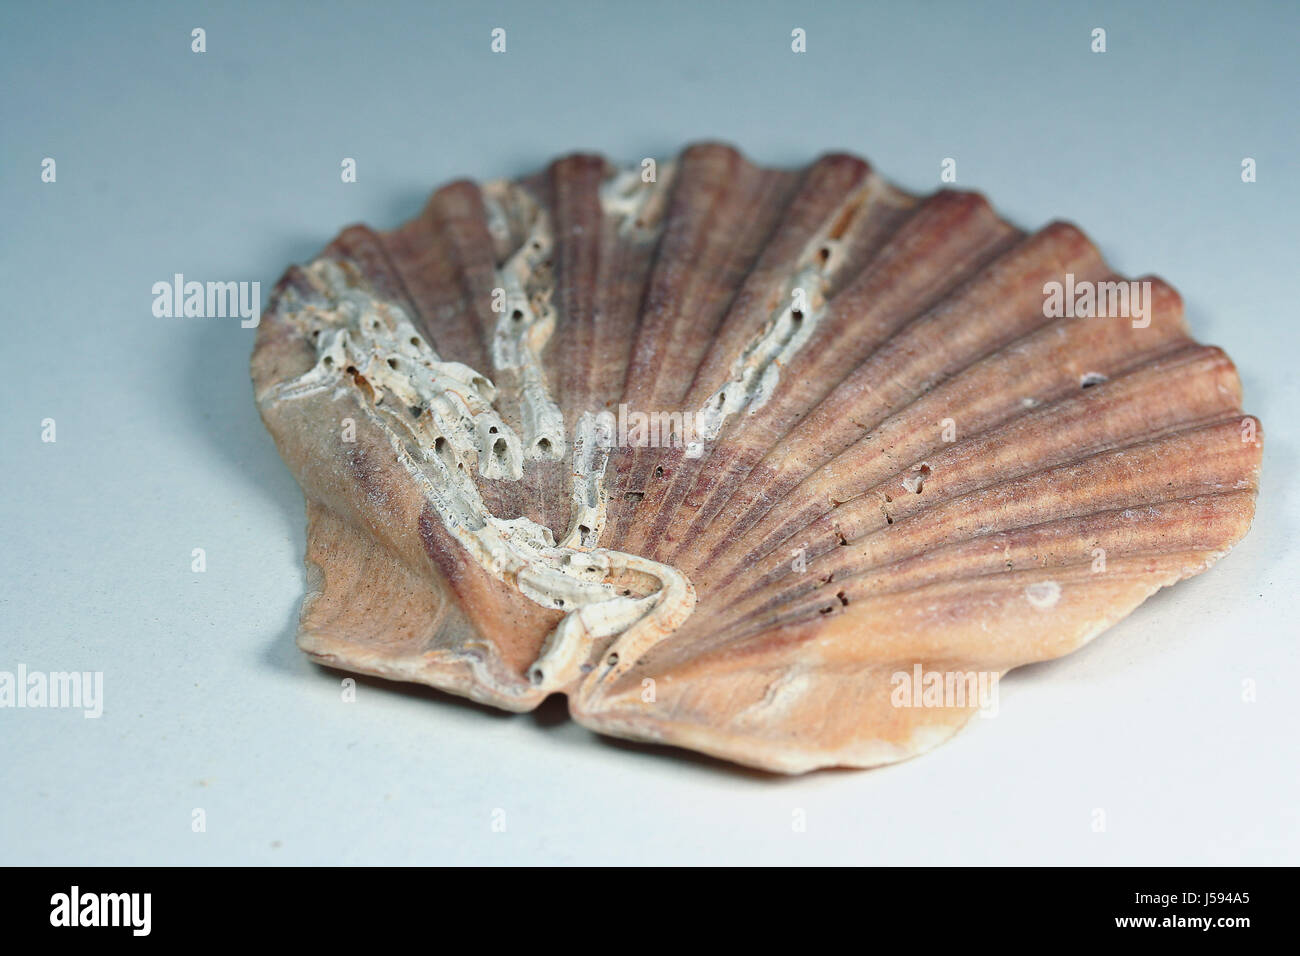 shell subjects Stock Photo